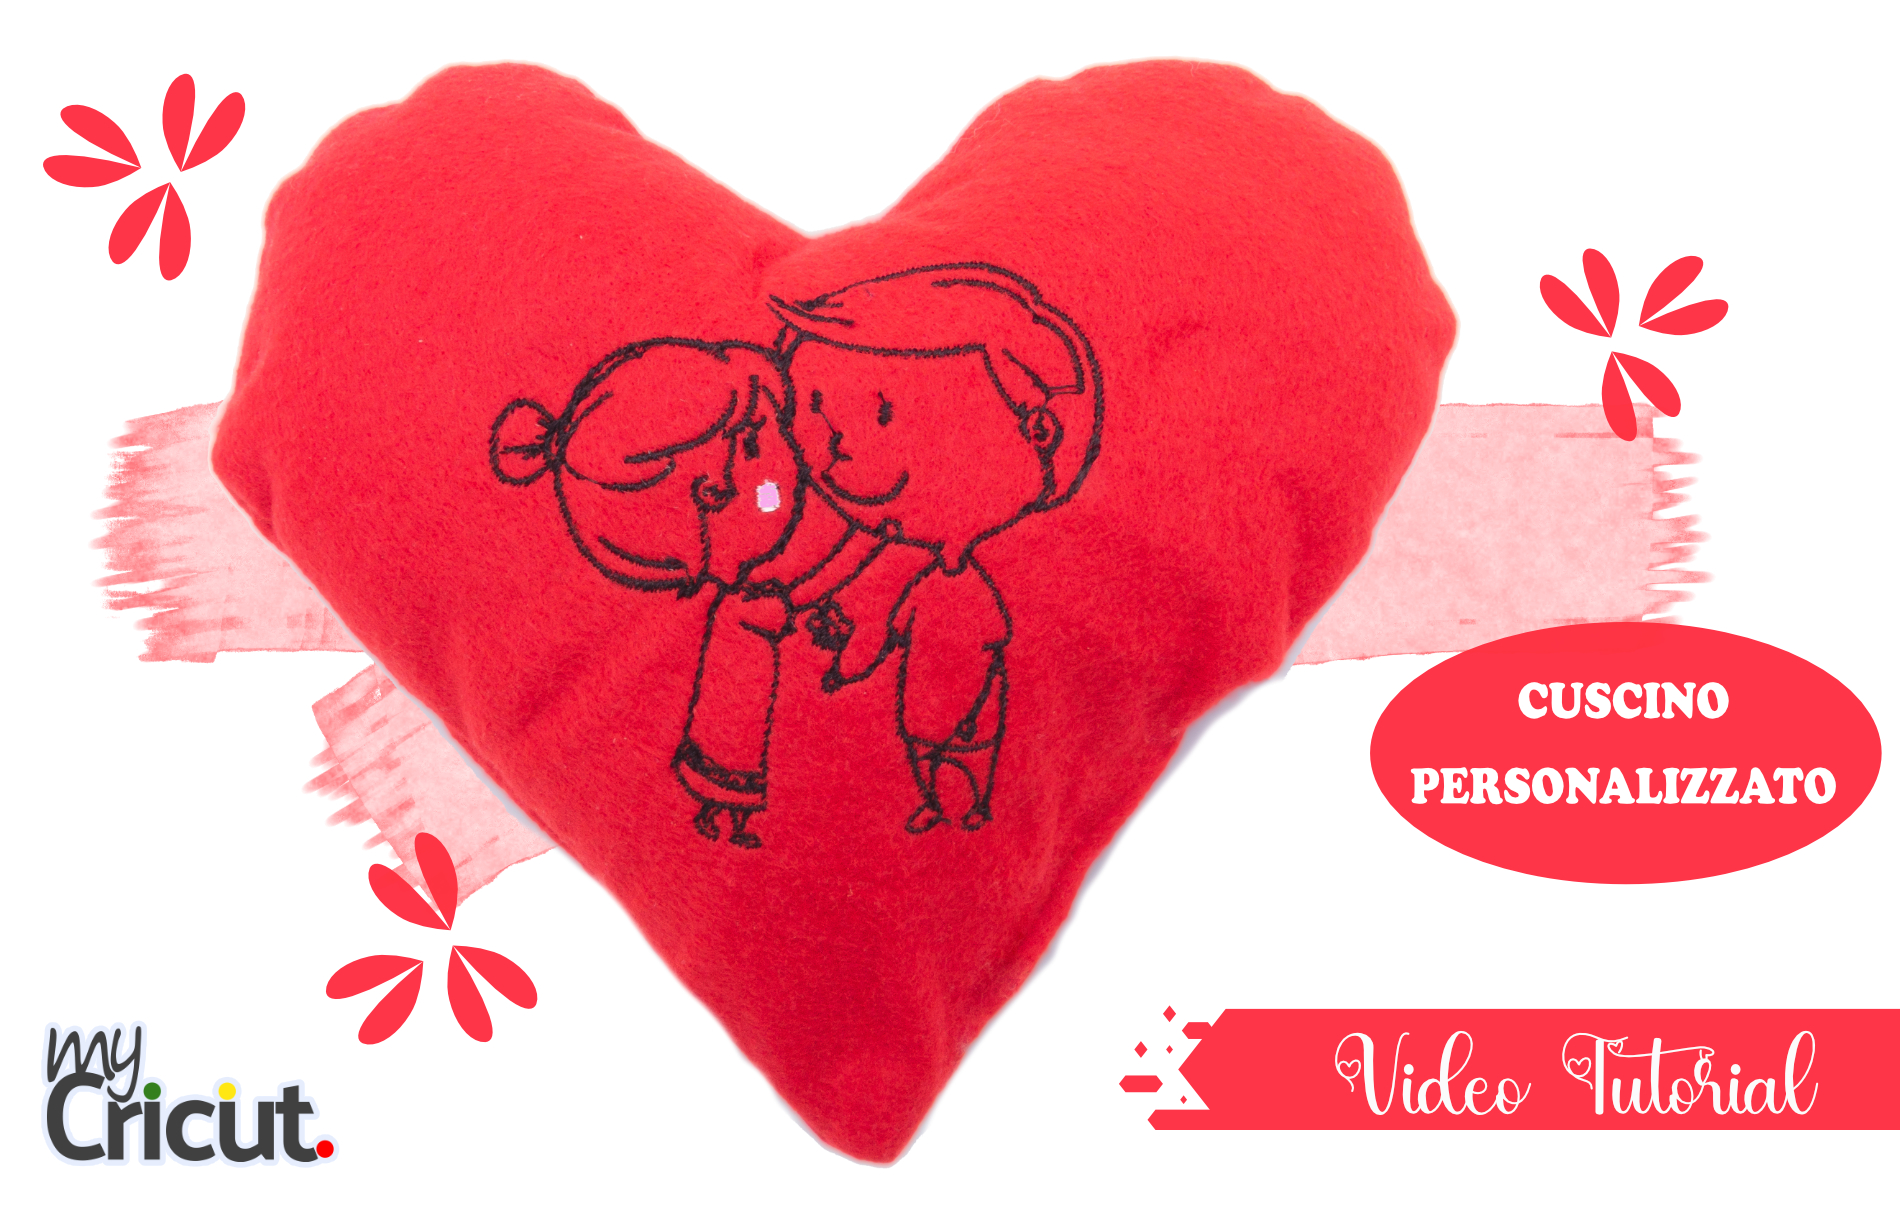 Cuscino personalizzato per San Valentino con Cricut Maker e Necchi Logica -  My Cricut